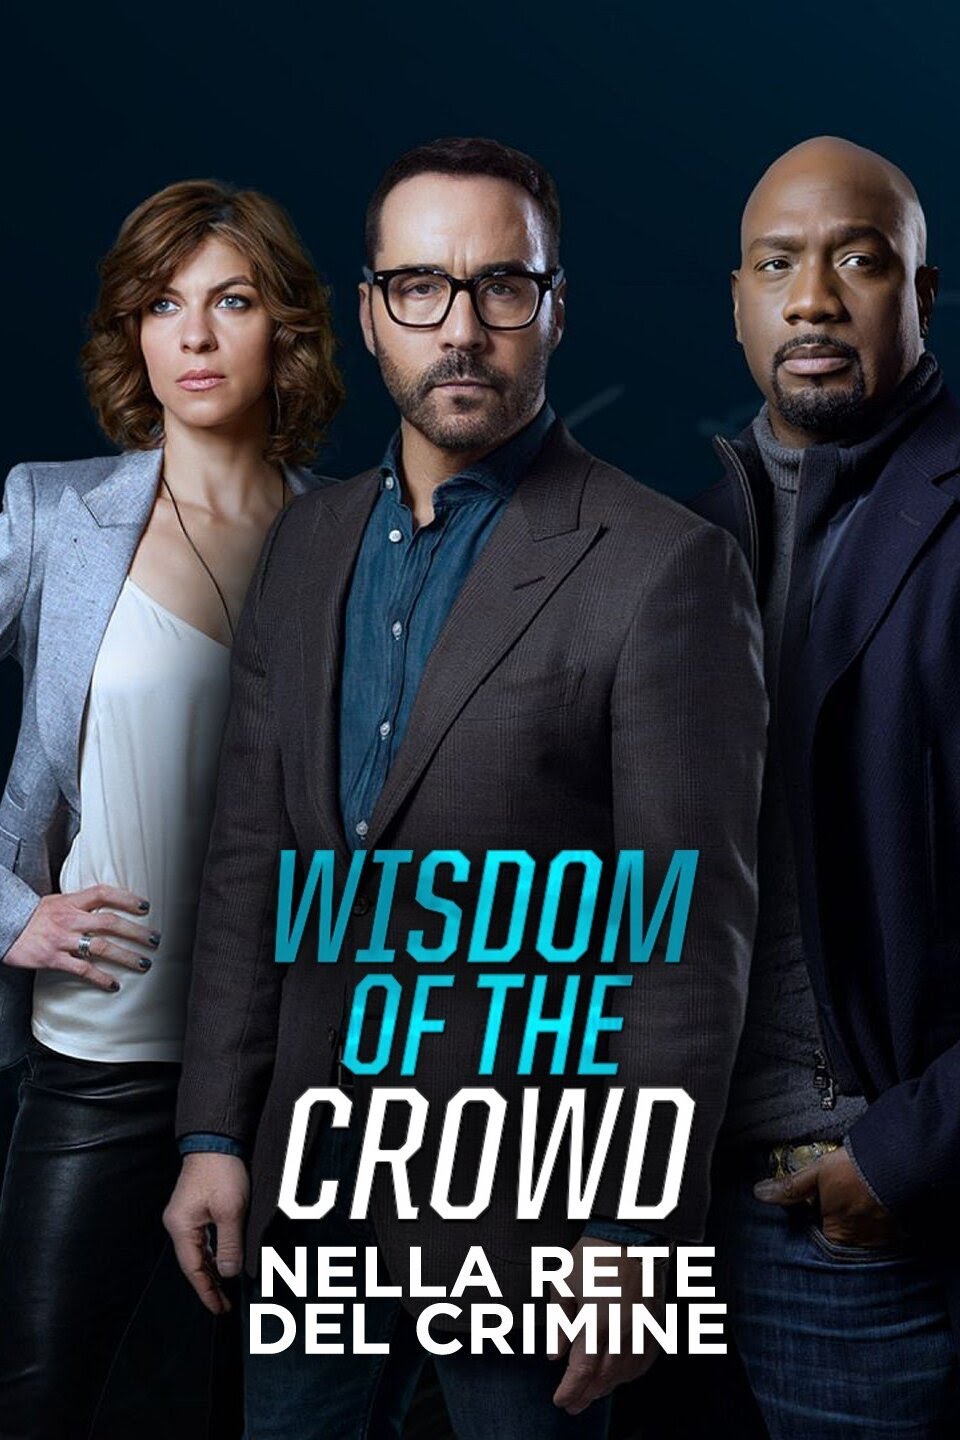 Wisdom of the Crowd – Nella rete del crimine